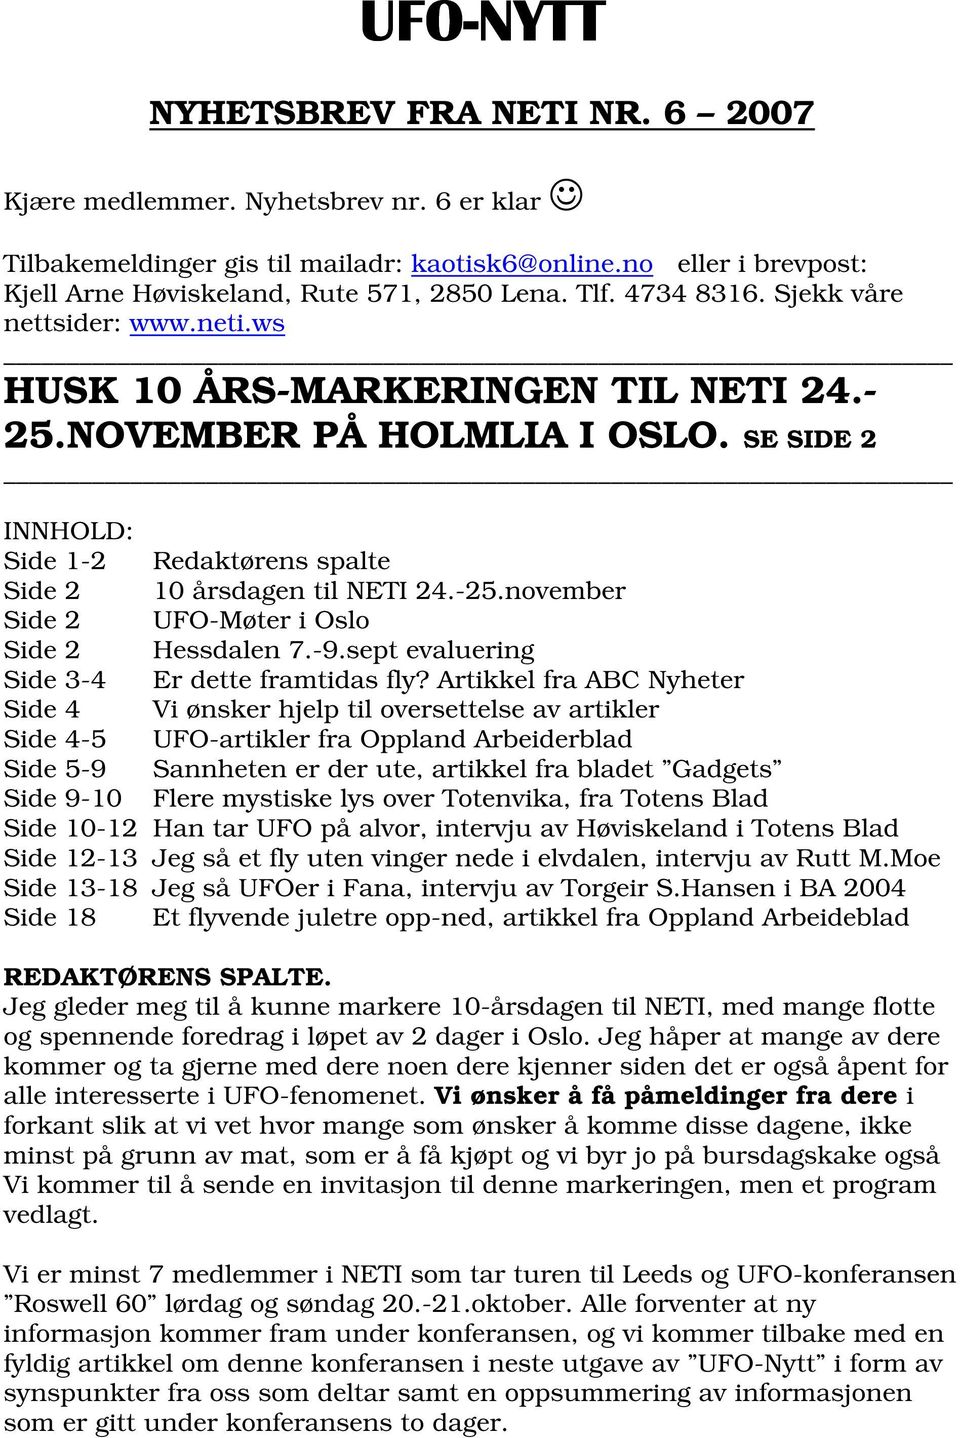 -25.november Side 2 UFO-Møter i Oslo Side 2 Hessdalen 7.-9.sept evaluering Side 3-4 Er dette framtidas fly?